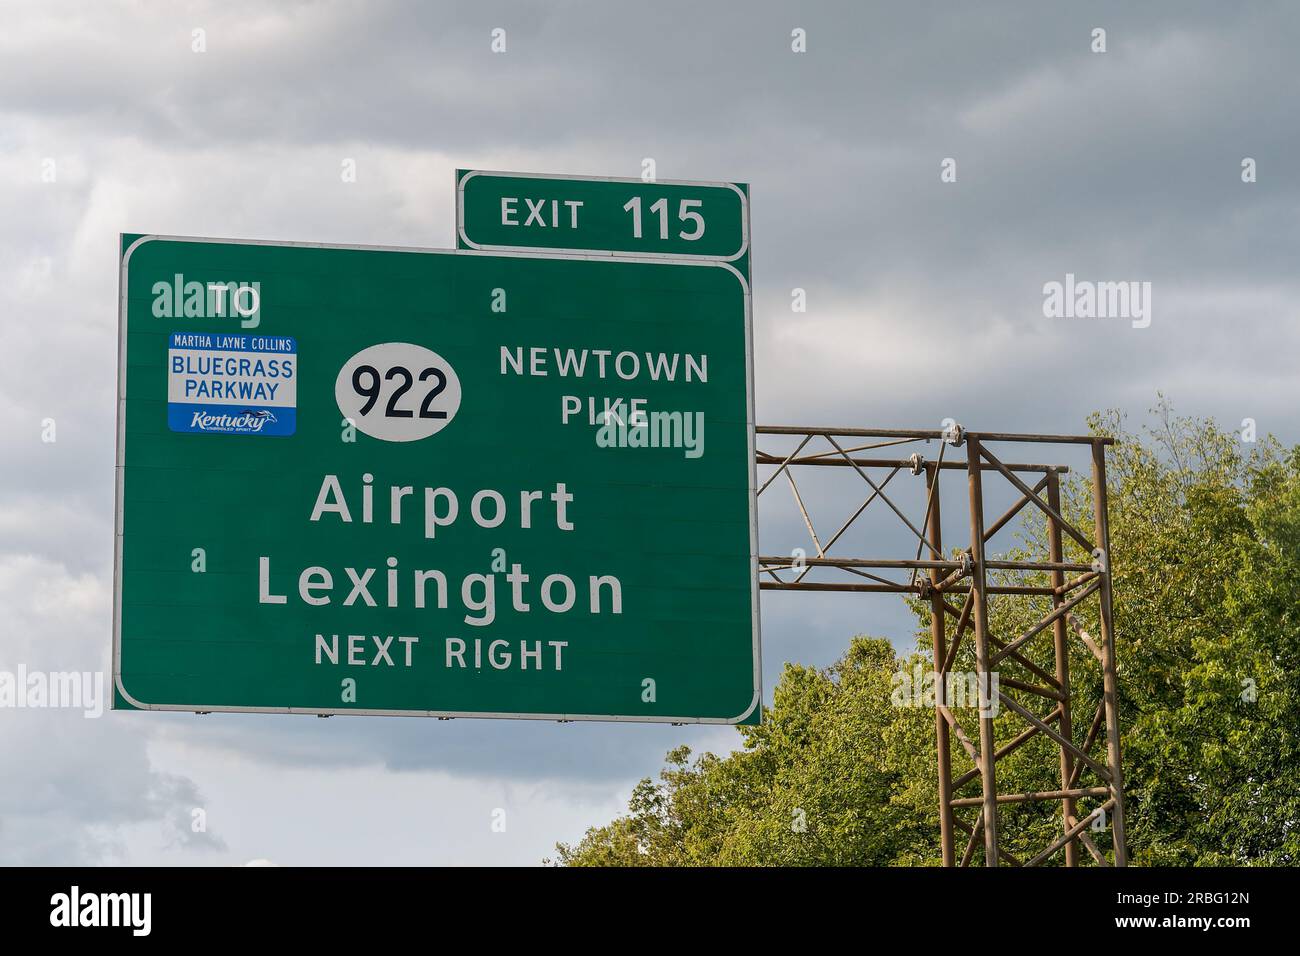 Lexington, KY - 10 septembre 2021 : panneau pour la sortie 115 de l'I 64, I 75 pour KY 922 Newtown Pike et Martha Layne Collins Bluegrass Parkway vers l'Airpor Banque D'Images